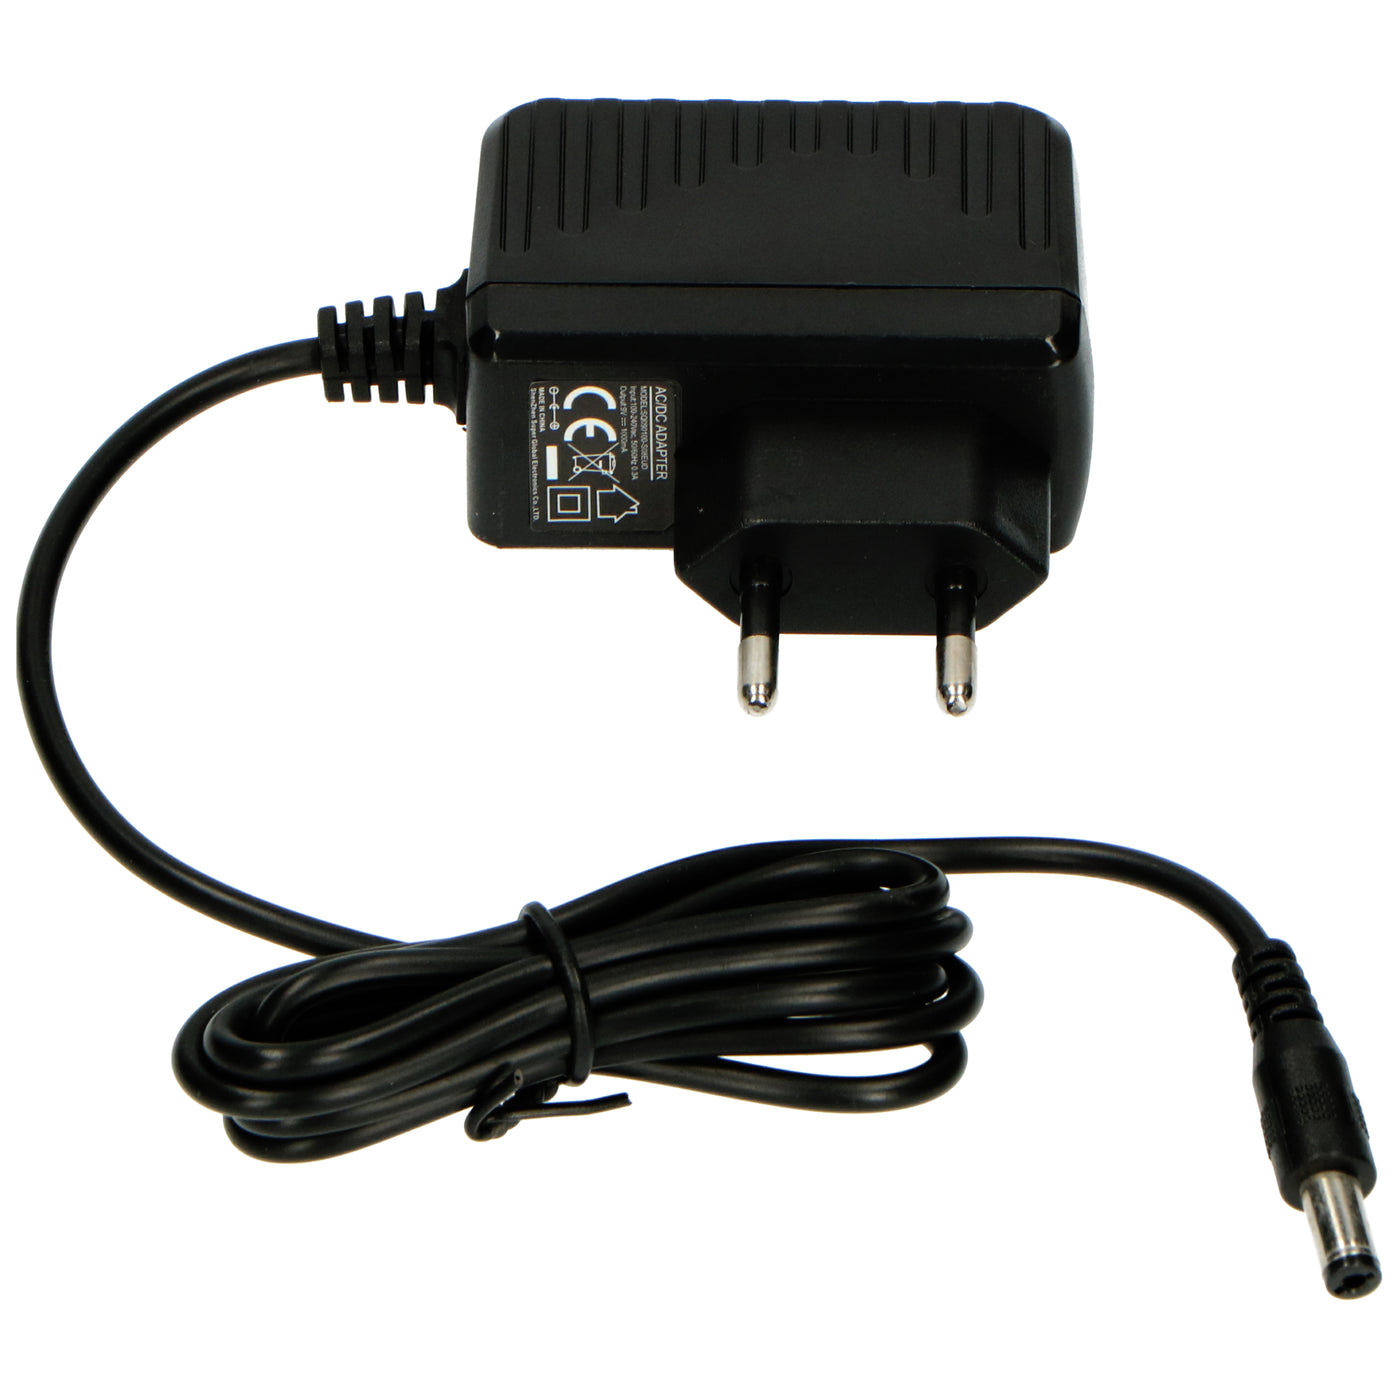 Lenco BT-272BK - Enceinte portable avec Bluetooth®, USB, emplacement pour carte SD et batterie rechargeable - Noir